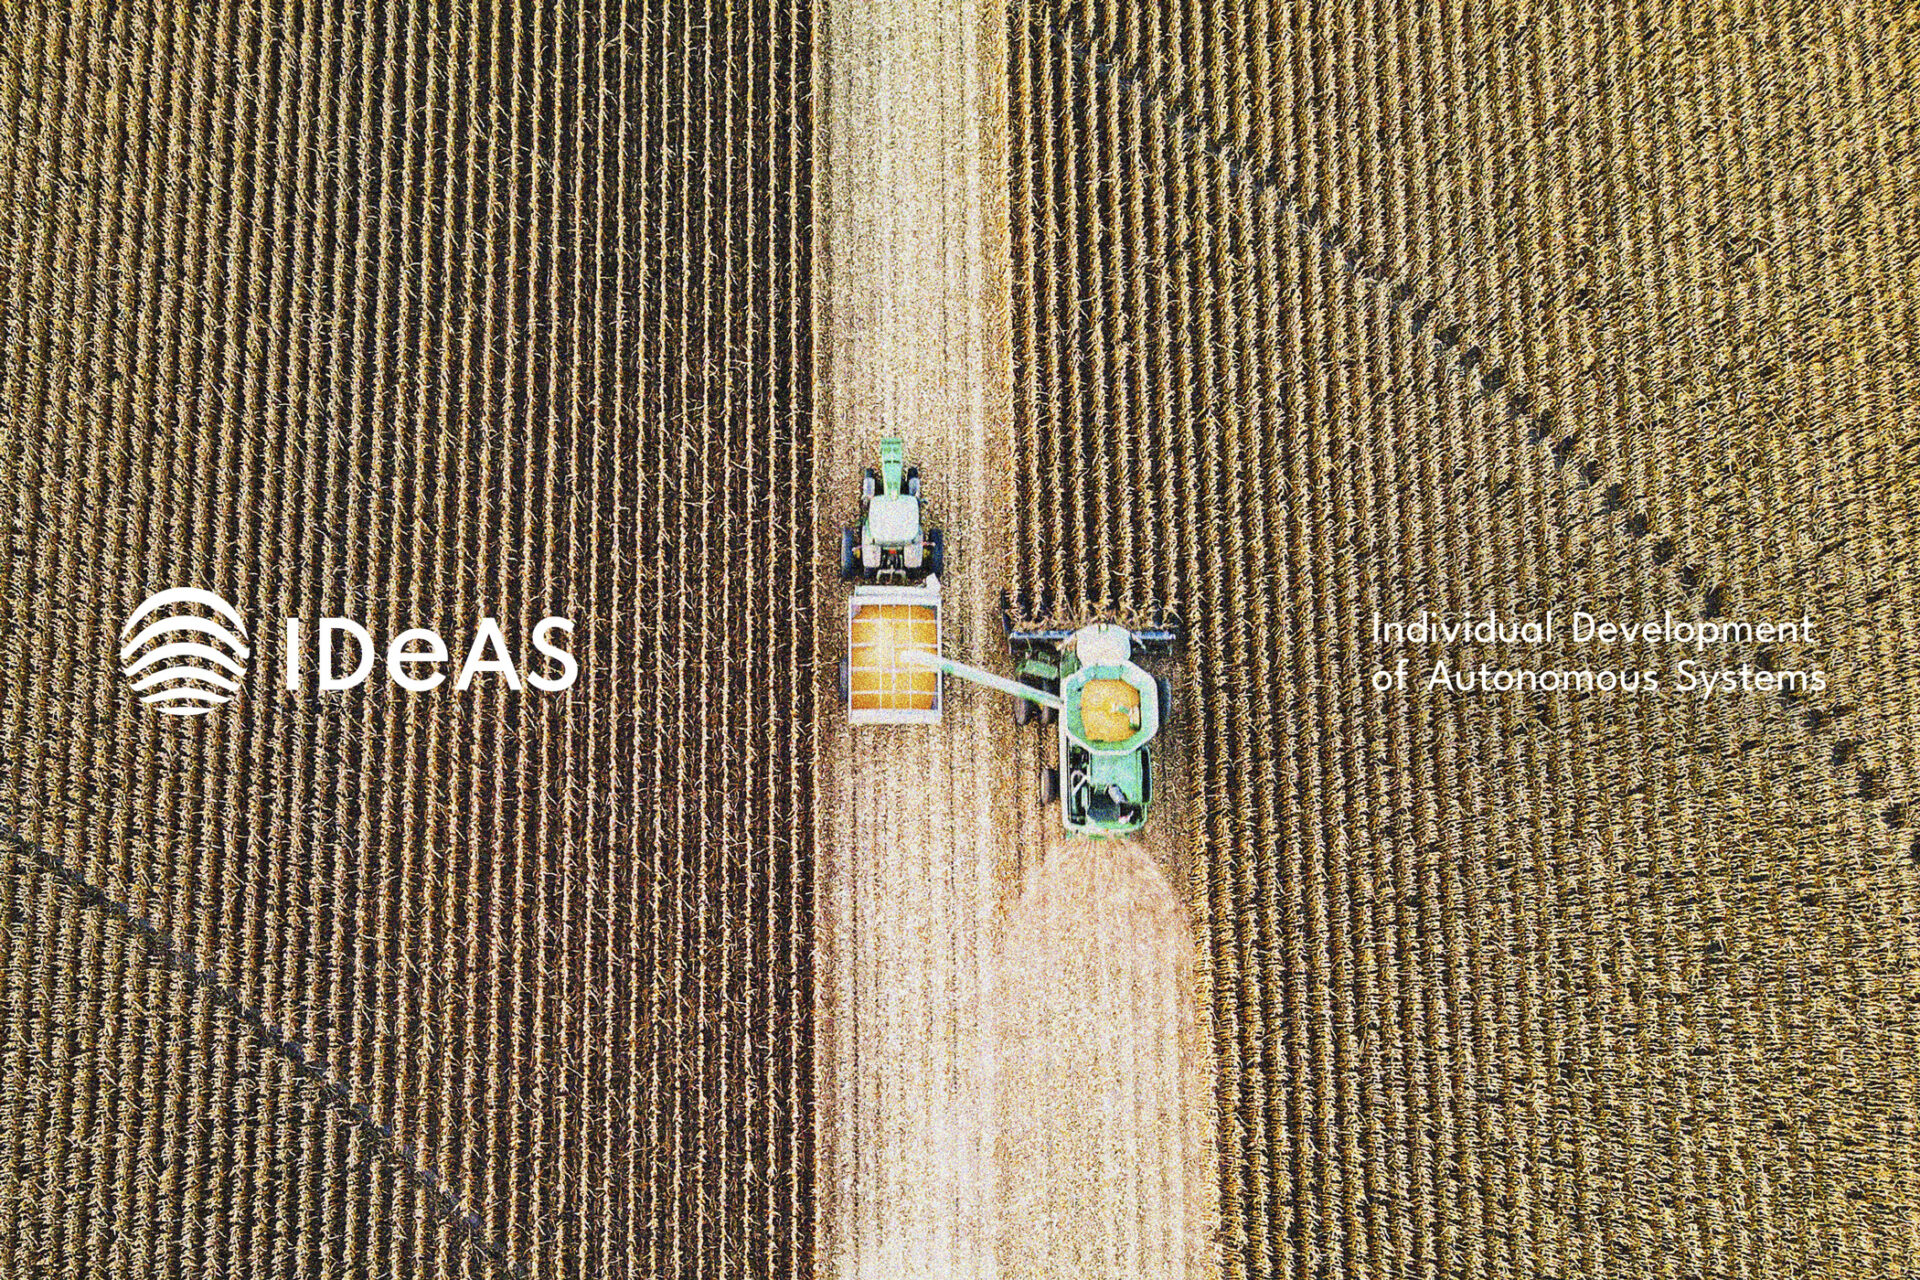 IDeAS Logo links und Firmenbezeichnung rechts des Bildrandes abgebildet. Mittig im Hintergrund ist ein Landwirtschaftsfahrzeug bei der Arbeit zu sehen.